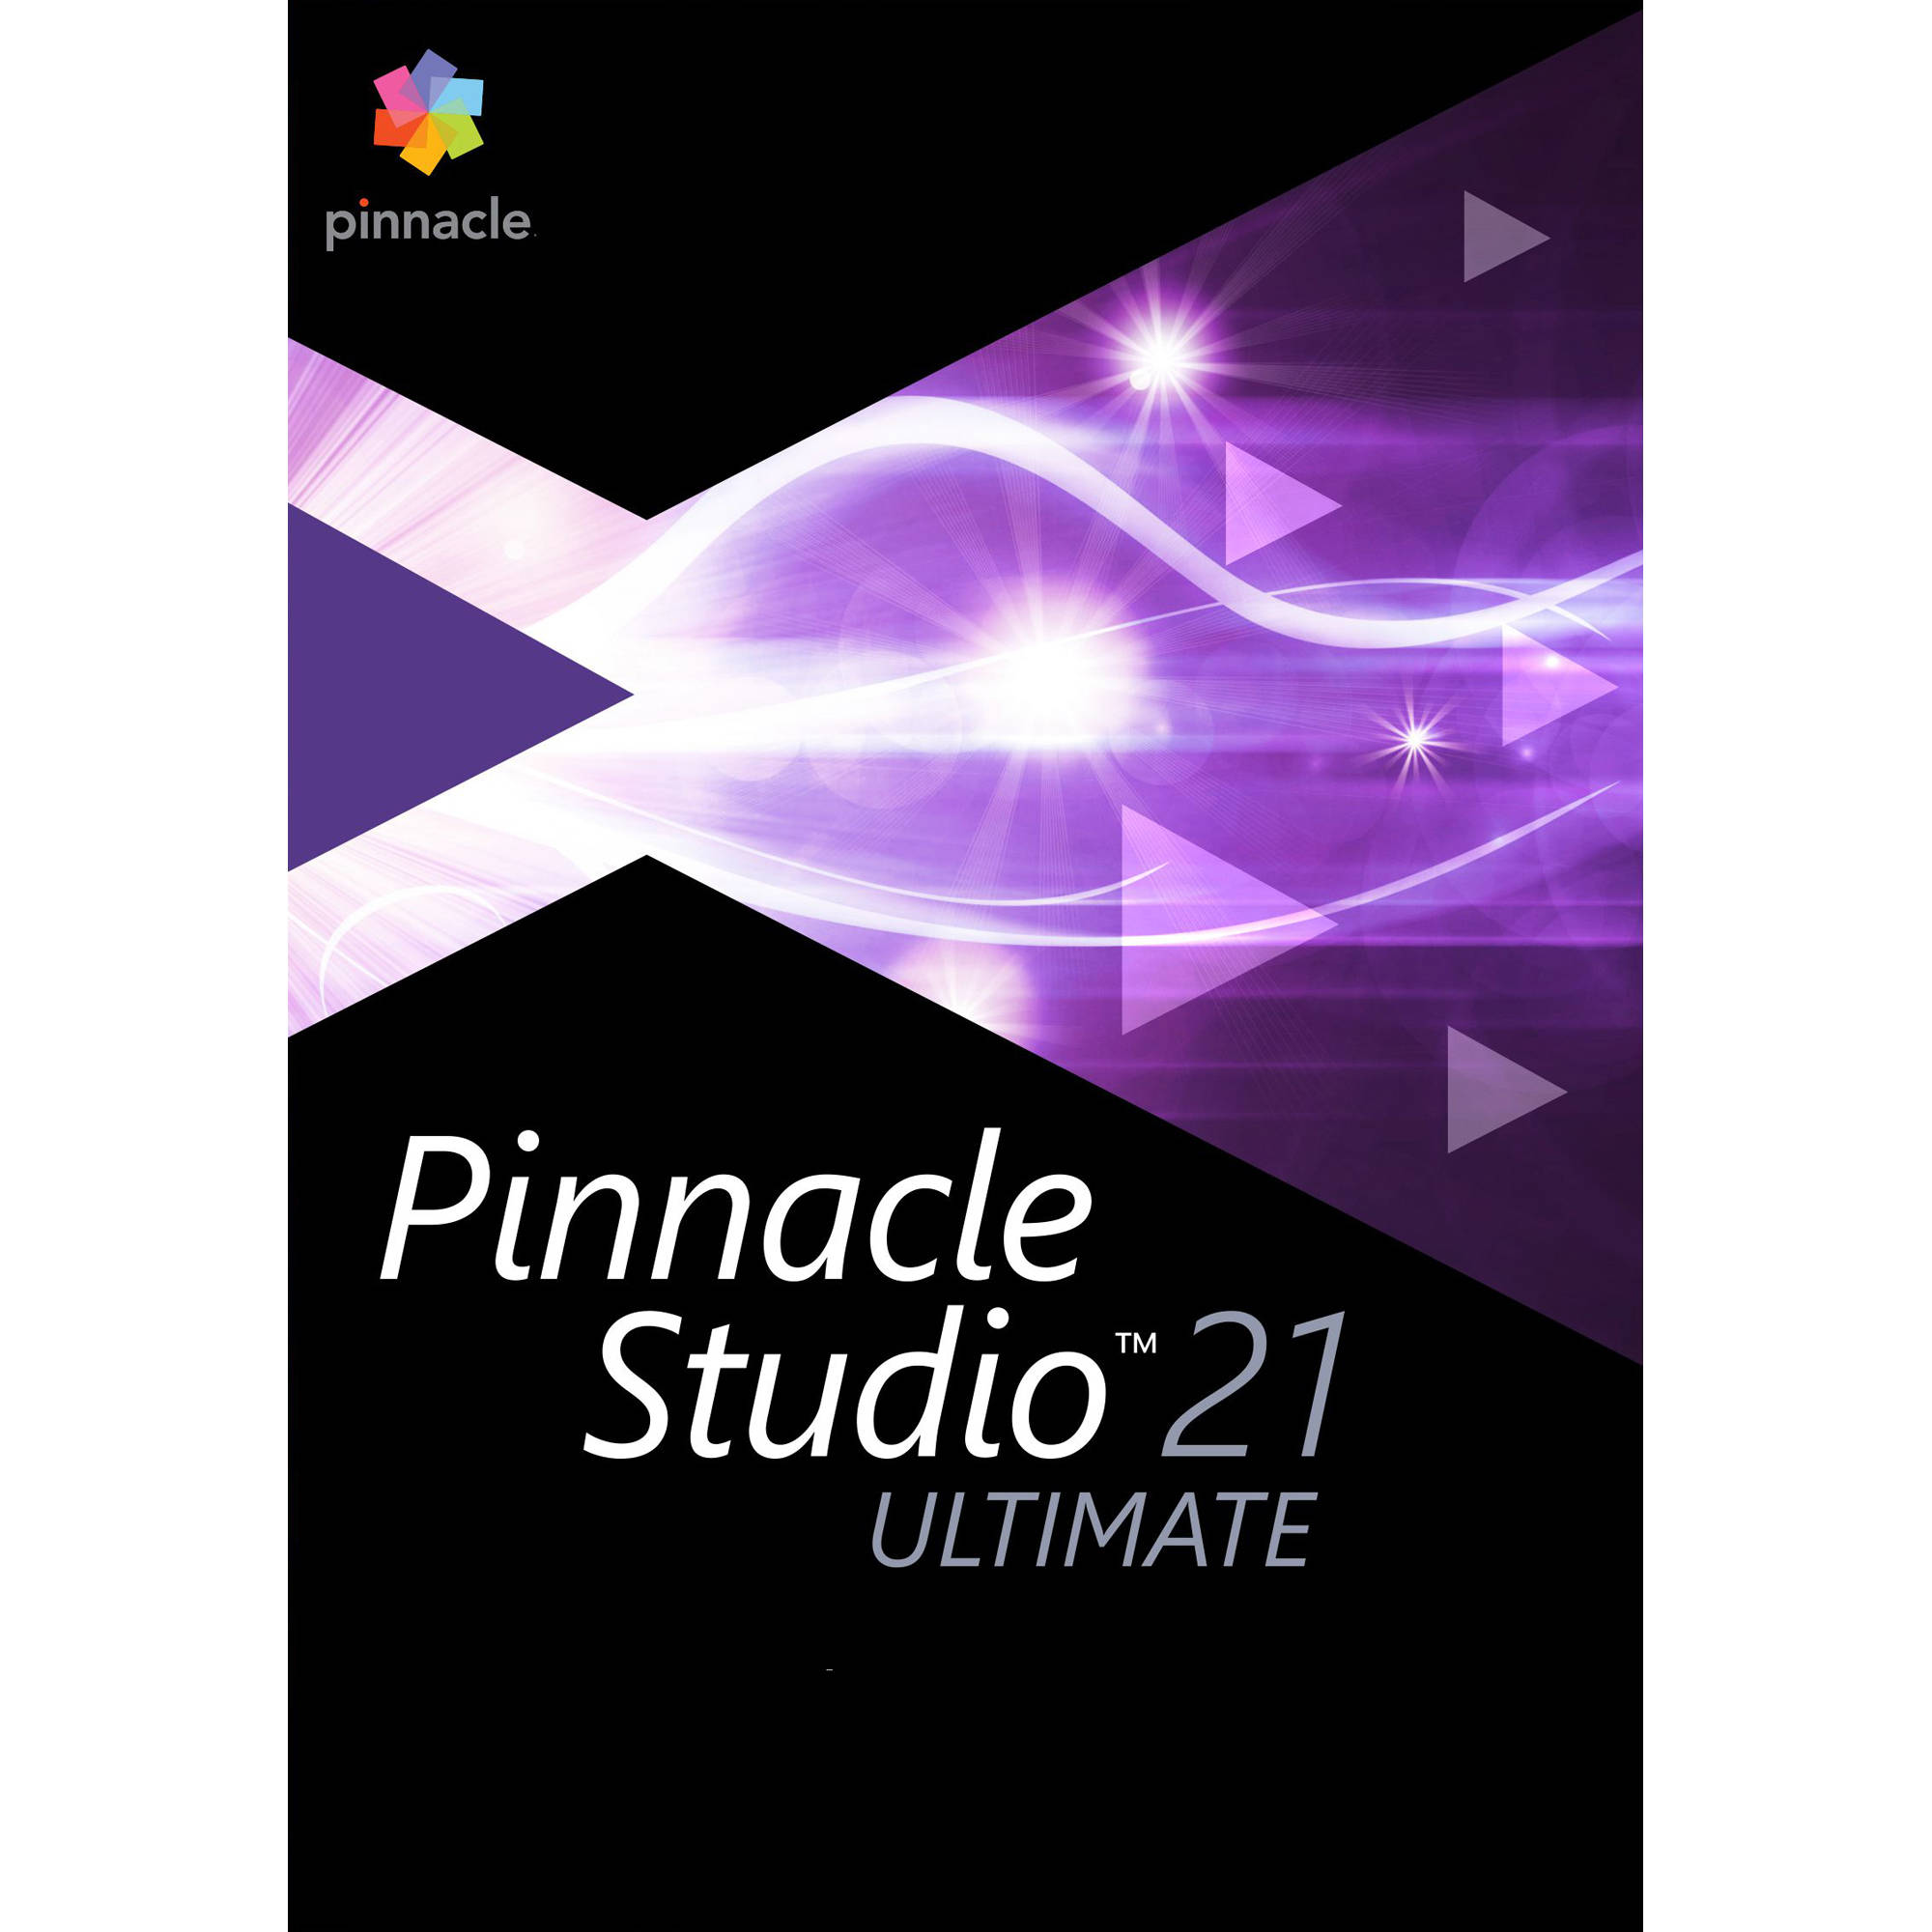 pinnacle studio 17 photo slideshow